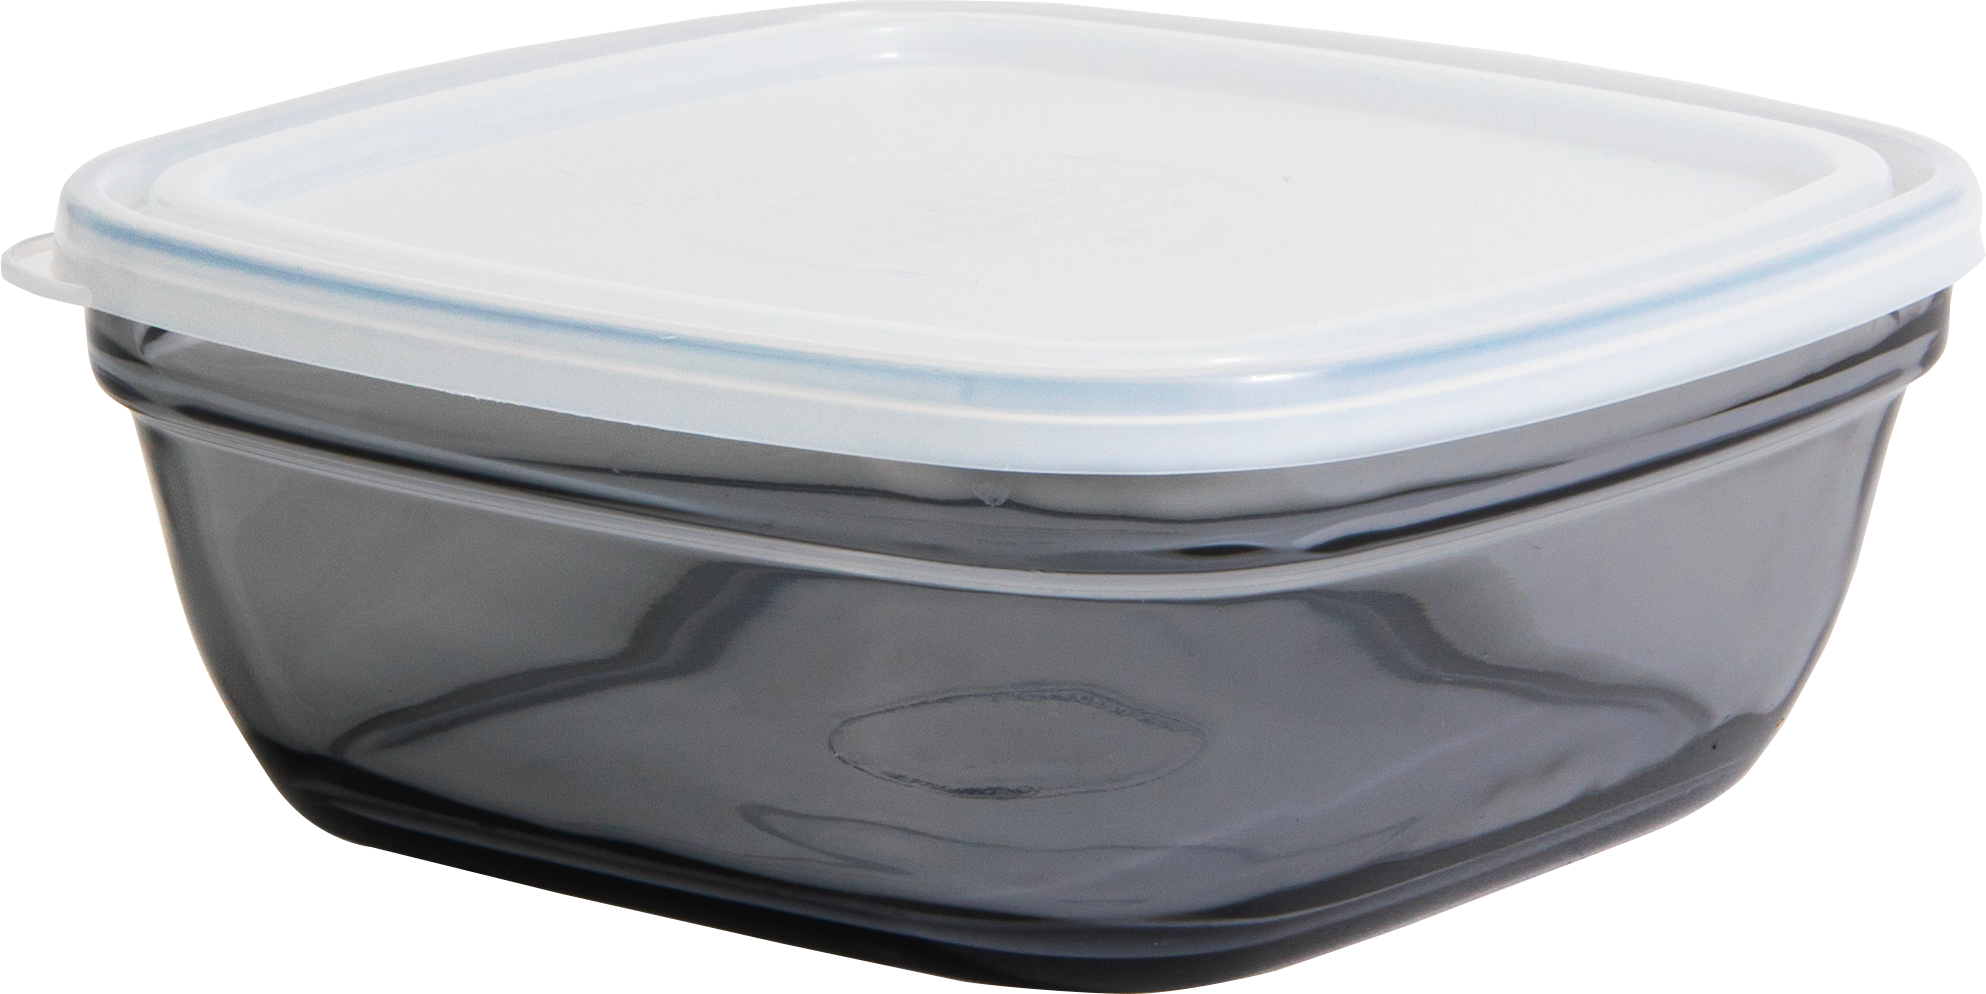 Tapis fraicheur pour frigo (lot de 2) gris COOK CONCEPT 45177